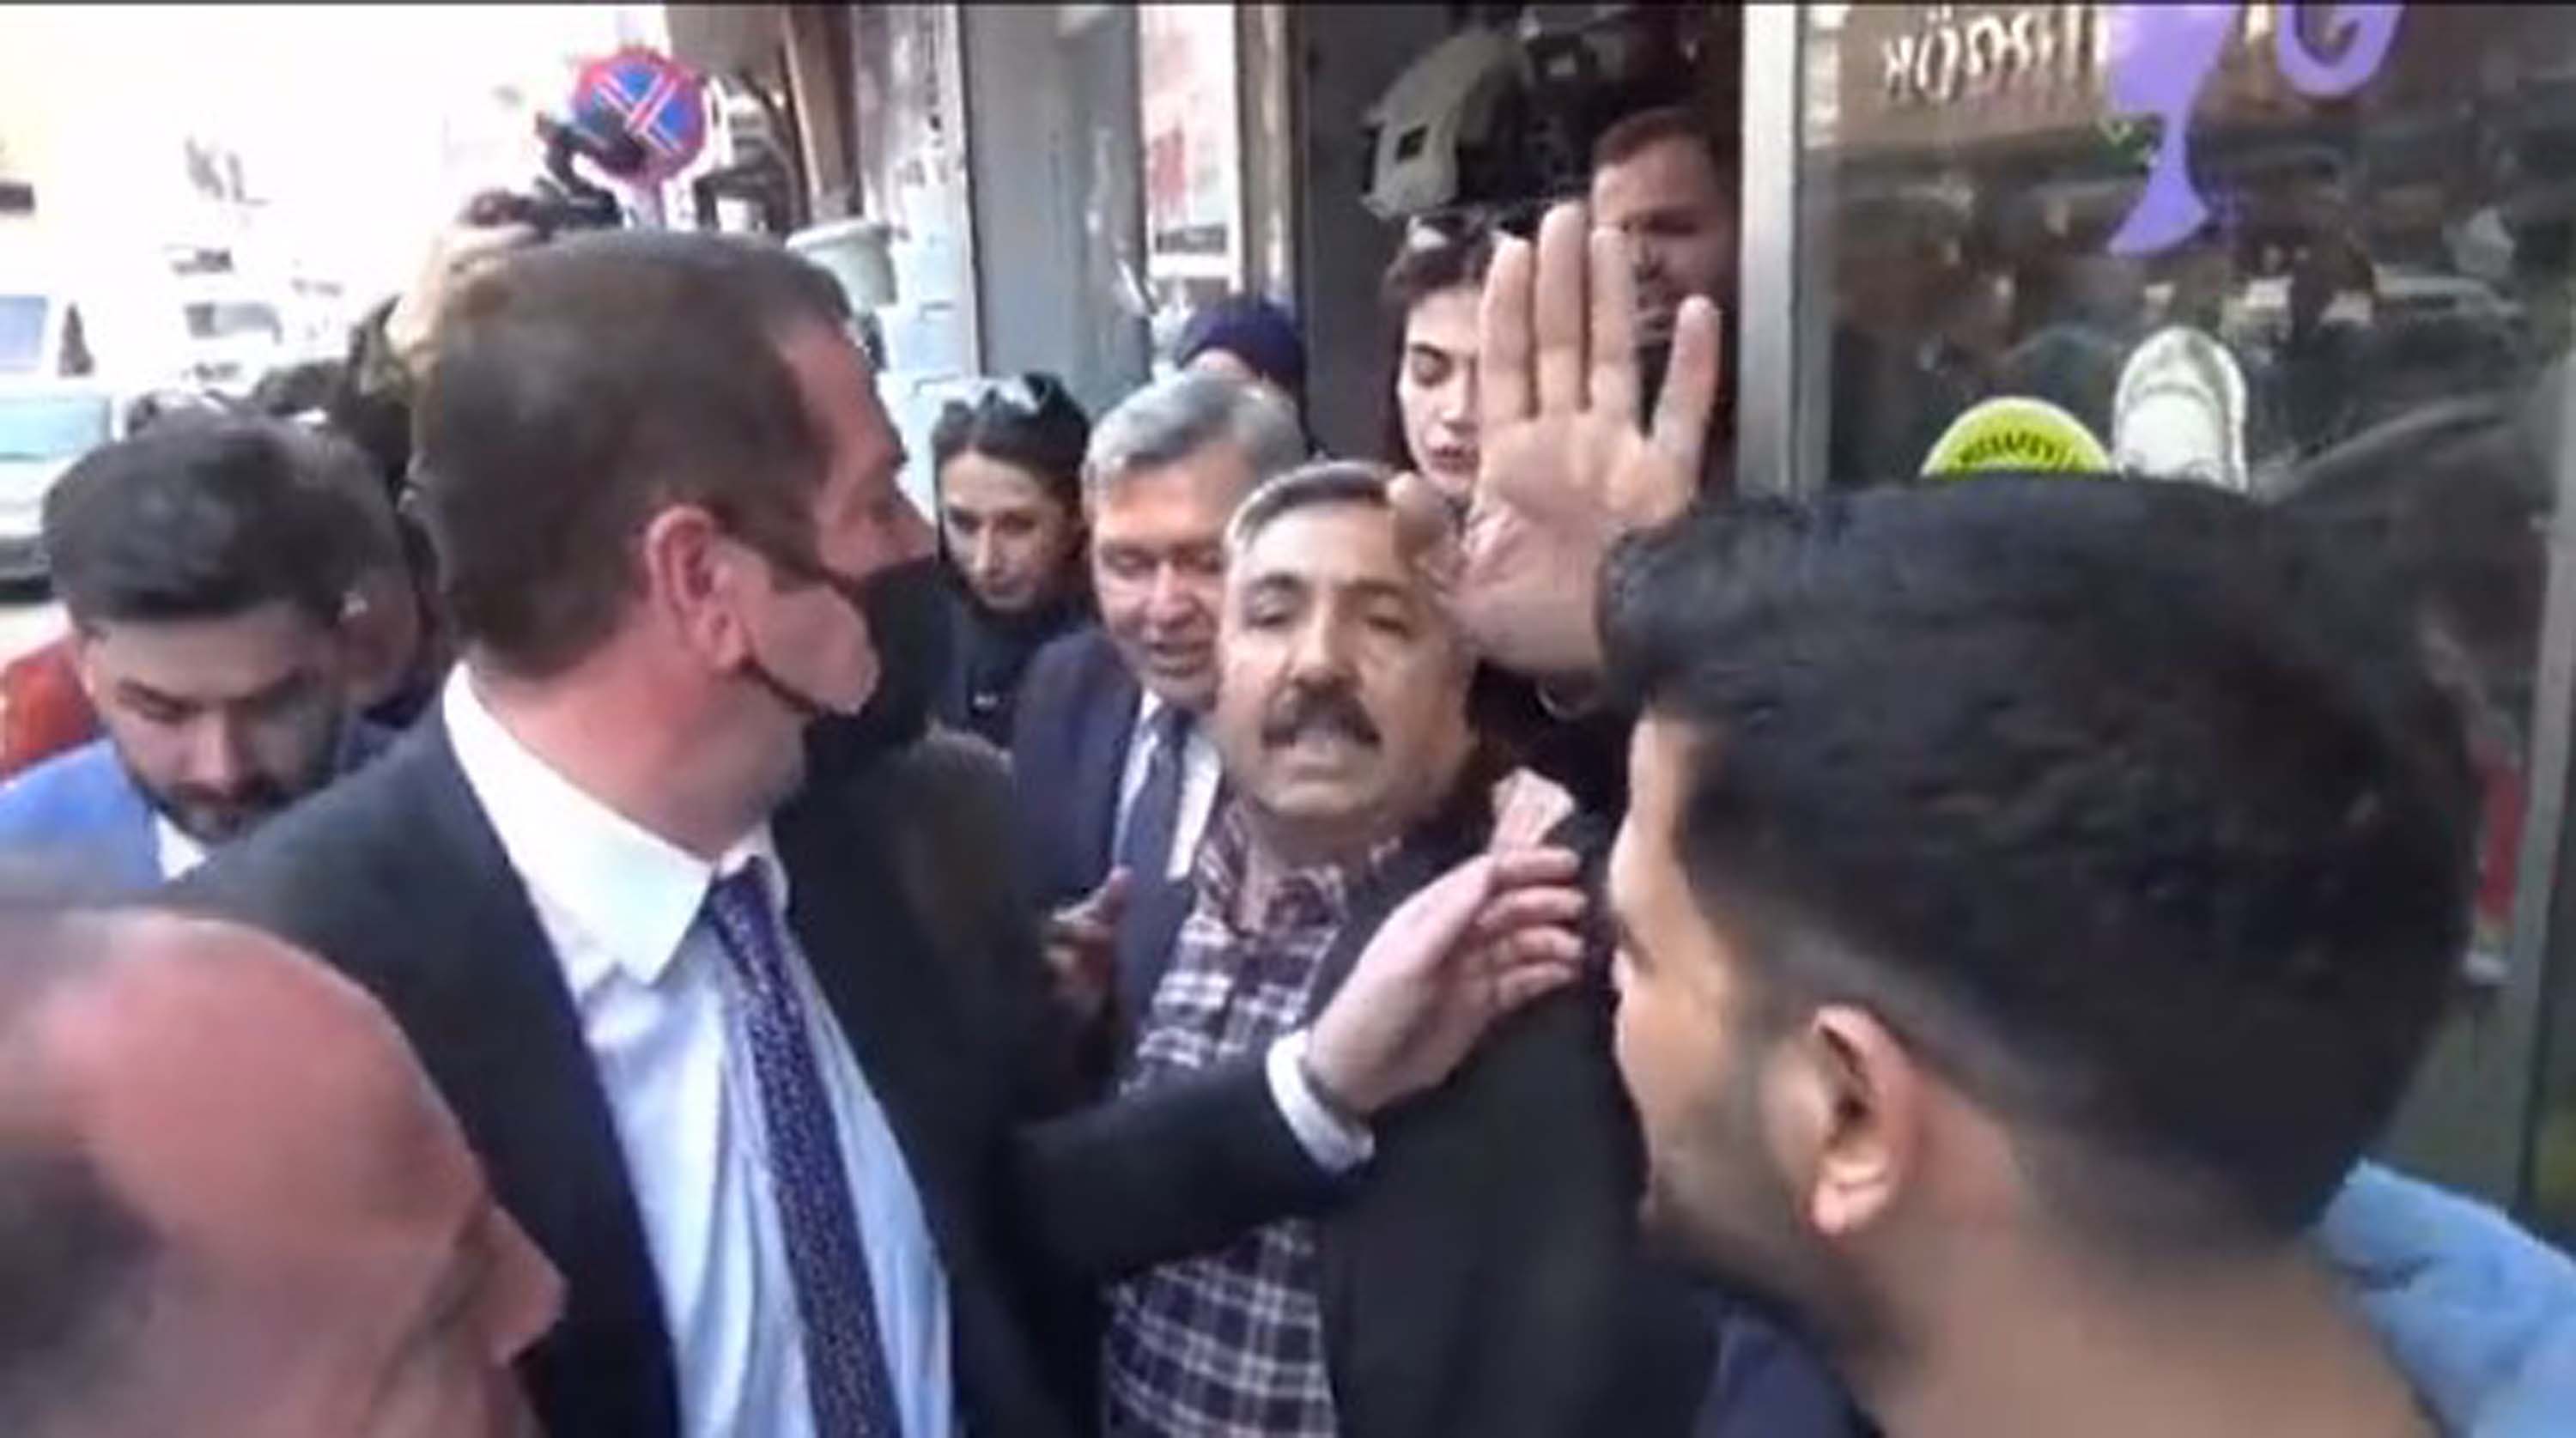 Bir selam versem Anadolu ayağa kalkar diyen Ahmet Davutoğlu'nu, Adana'da kovulmaktan beter ettiler! Sen vatan hainisin!